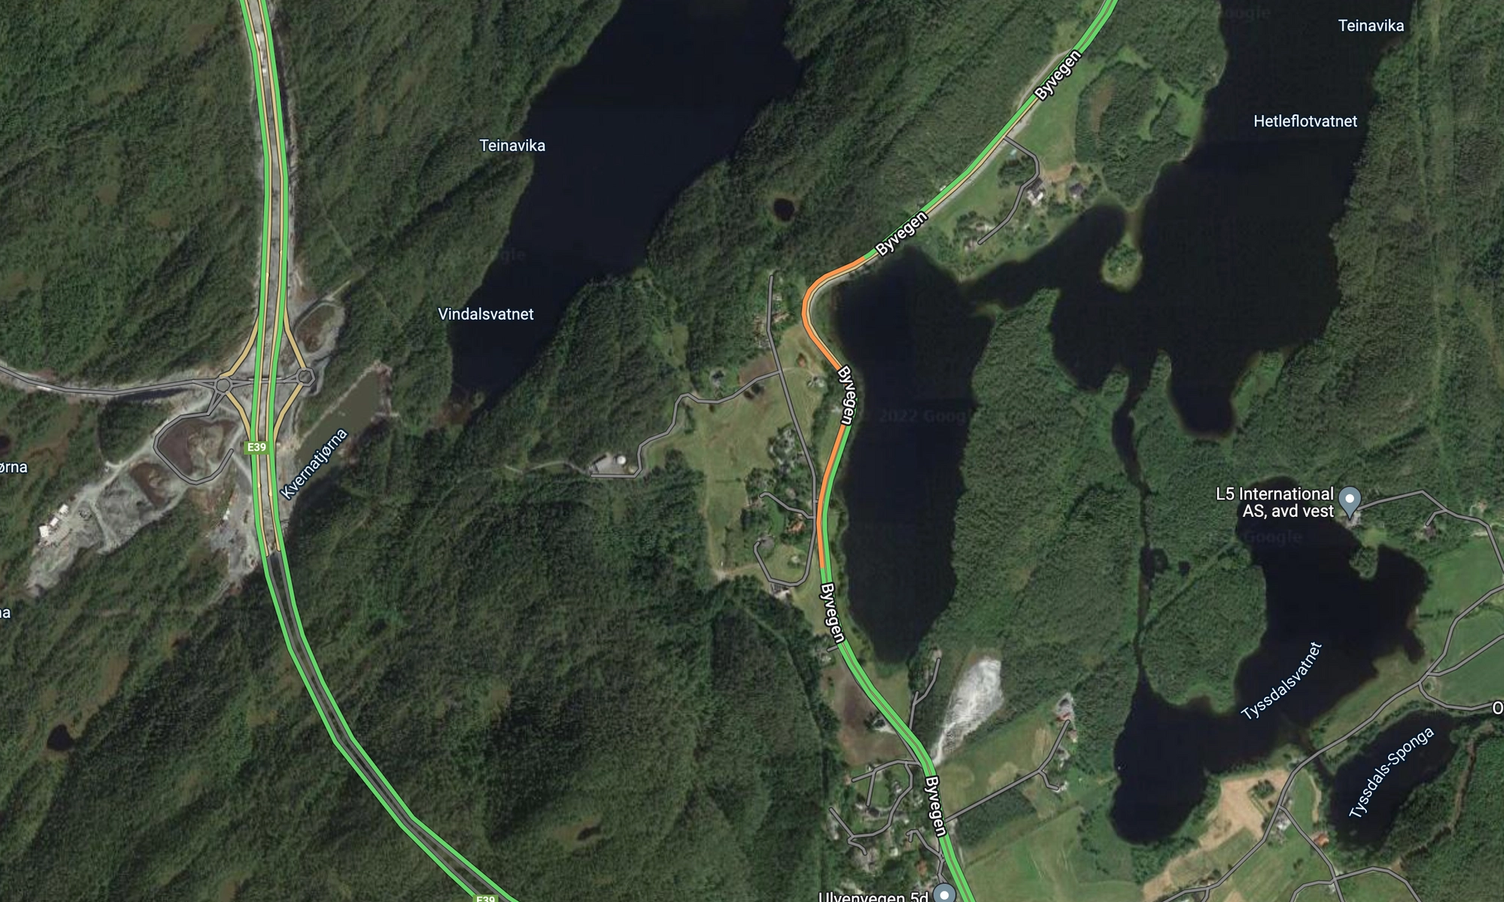 Ifølgje Google Maps si trafikkovervaking går trafikken seint ved den største svingen på Hetleflåten. (Kart: Google Maps)